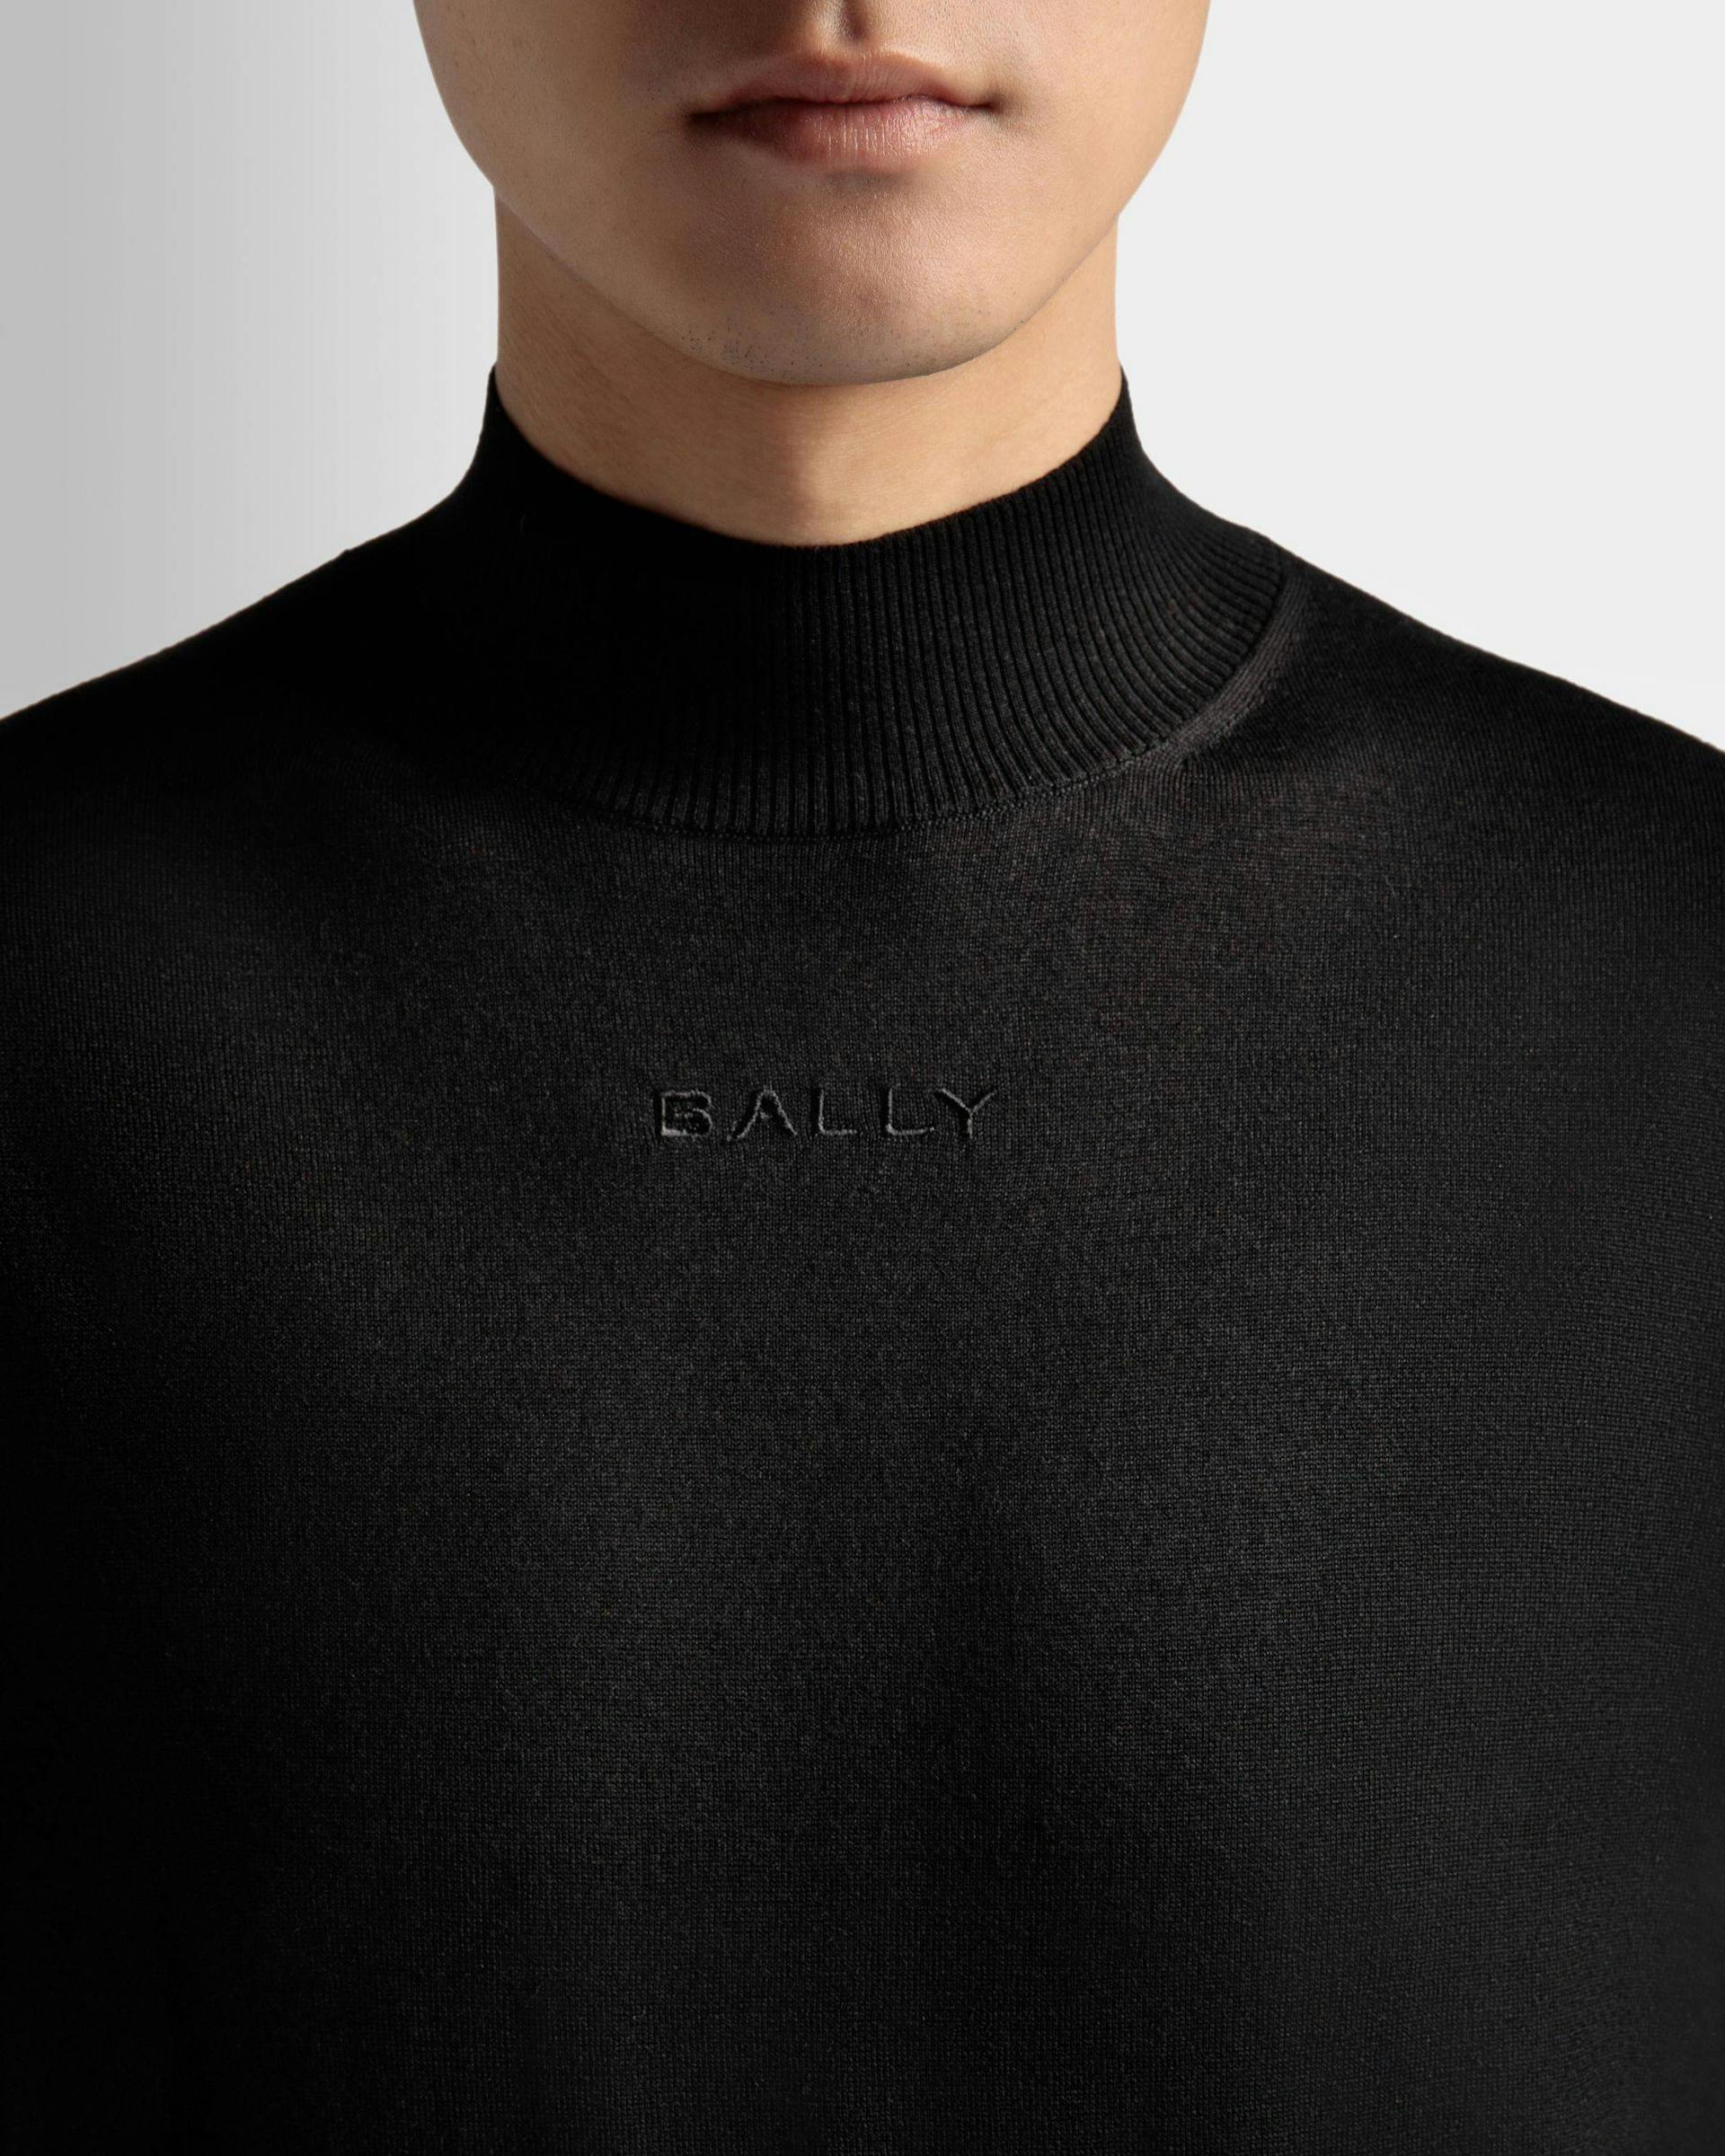 Men's Roll Neck Sweater in Black Wool | Bally | On Model Detail